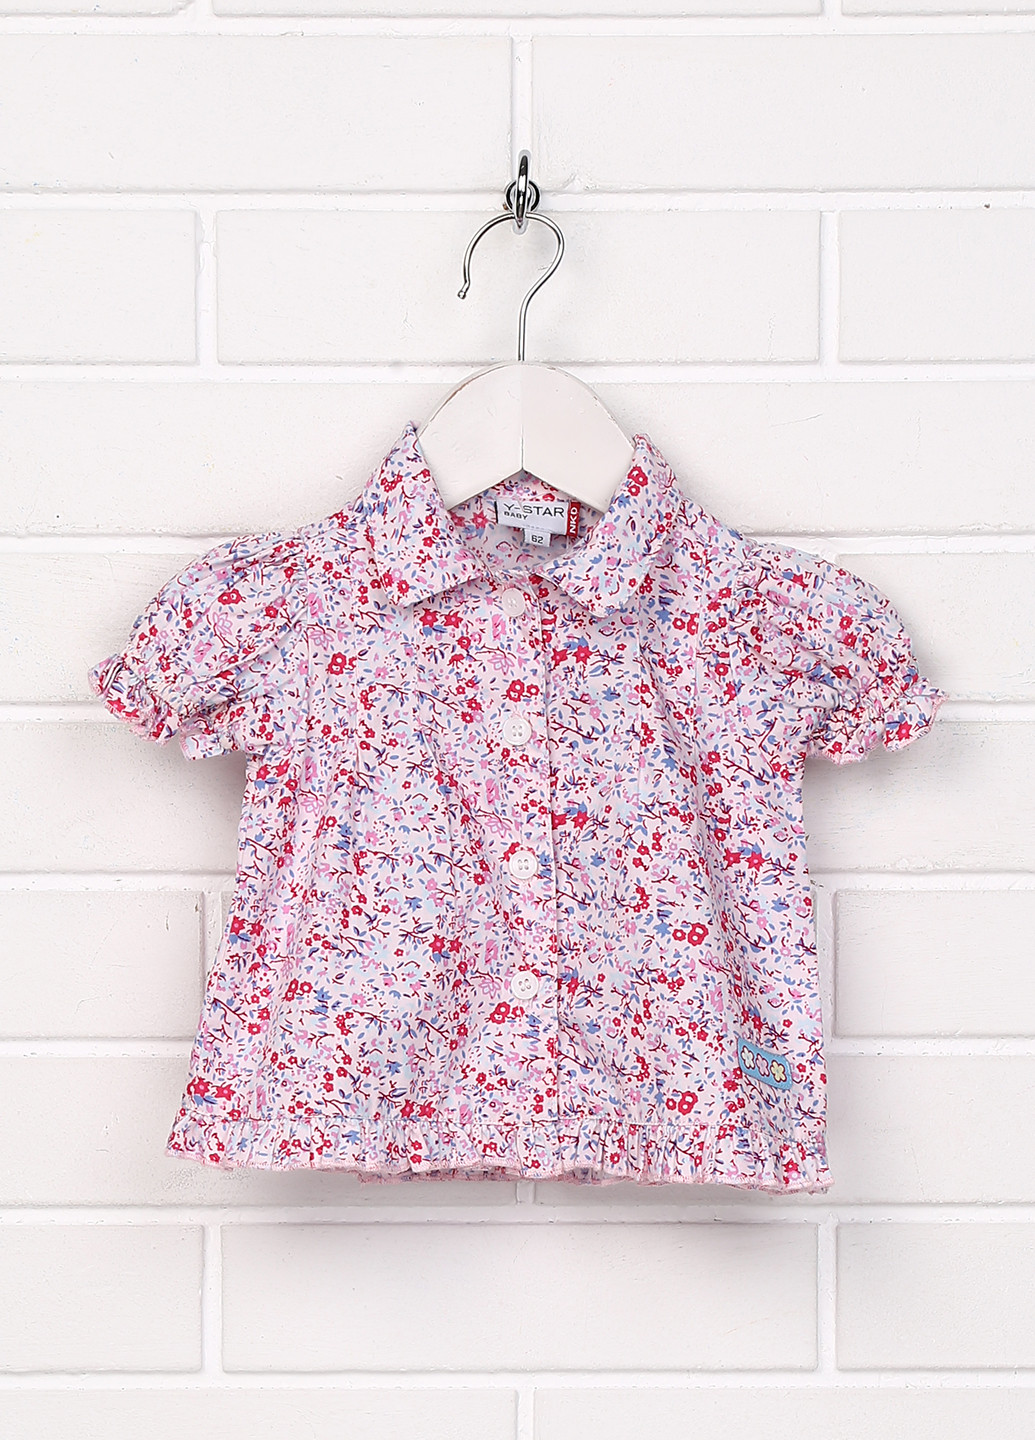 Комбинированная цветочной расцветки блузка Y-STAR летняя